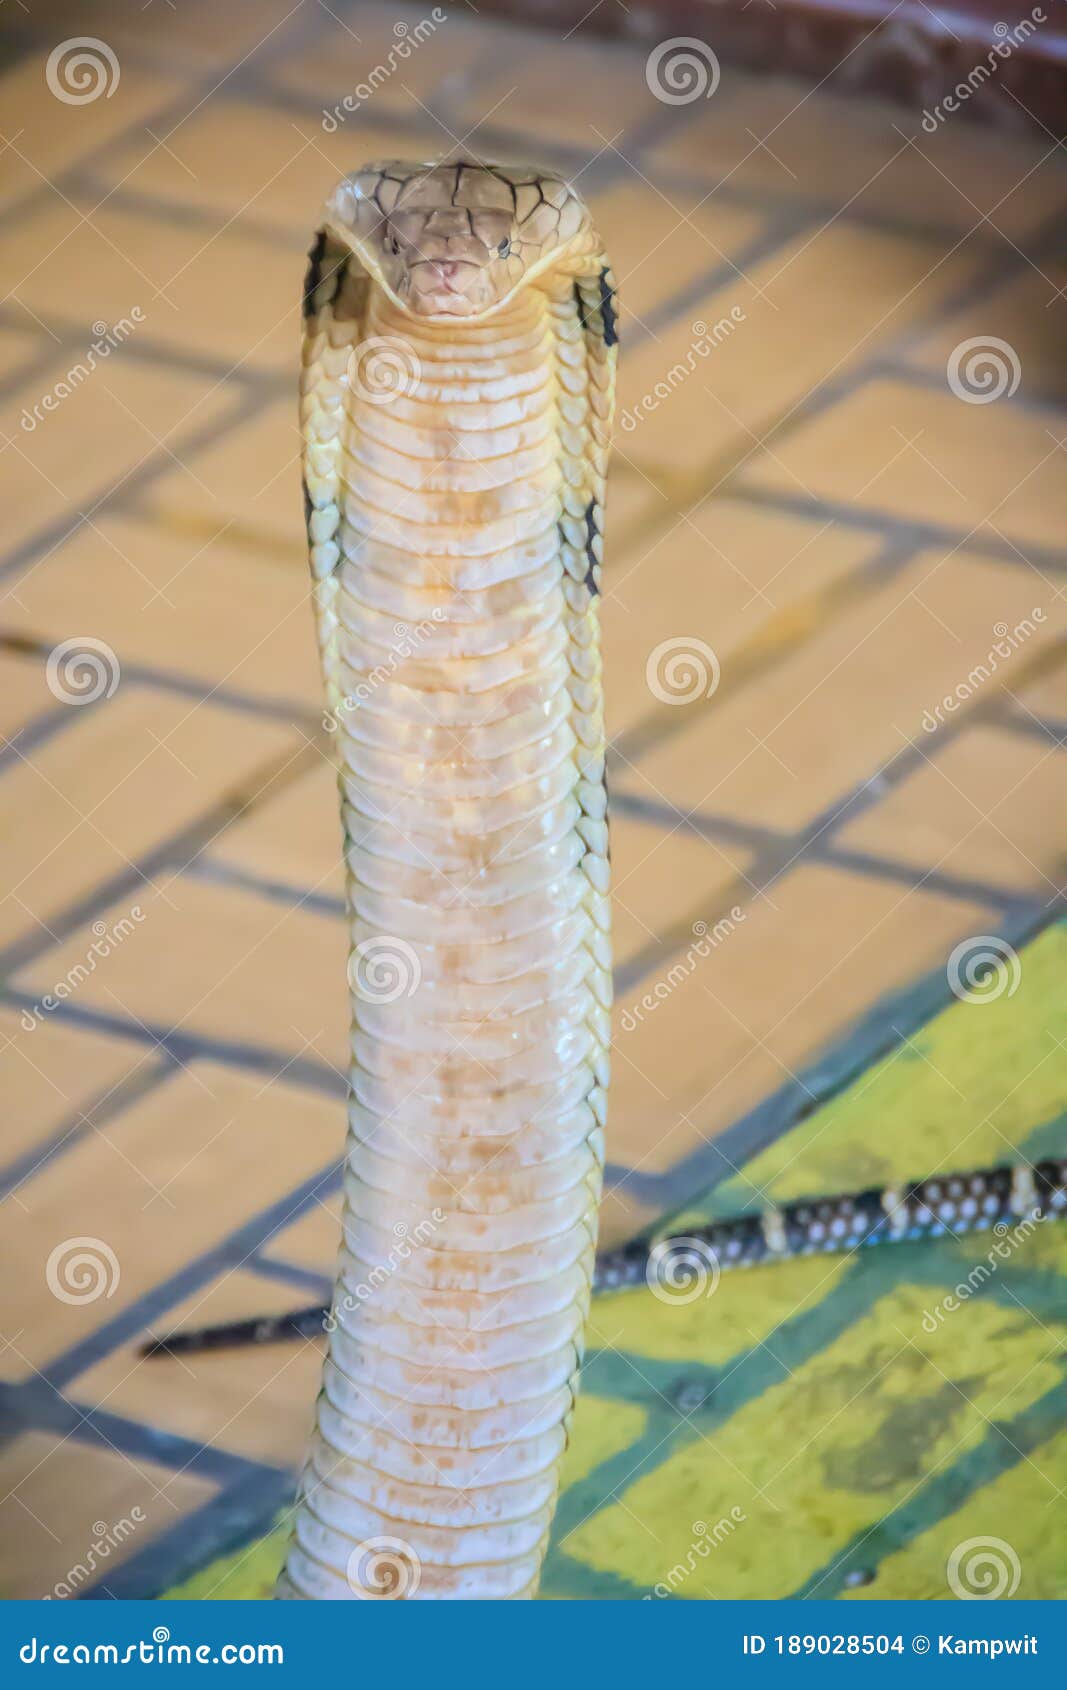 蛇王。Snake King. (Hong Kong Cantonese speakers might appreci… | Flickr